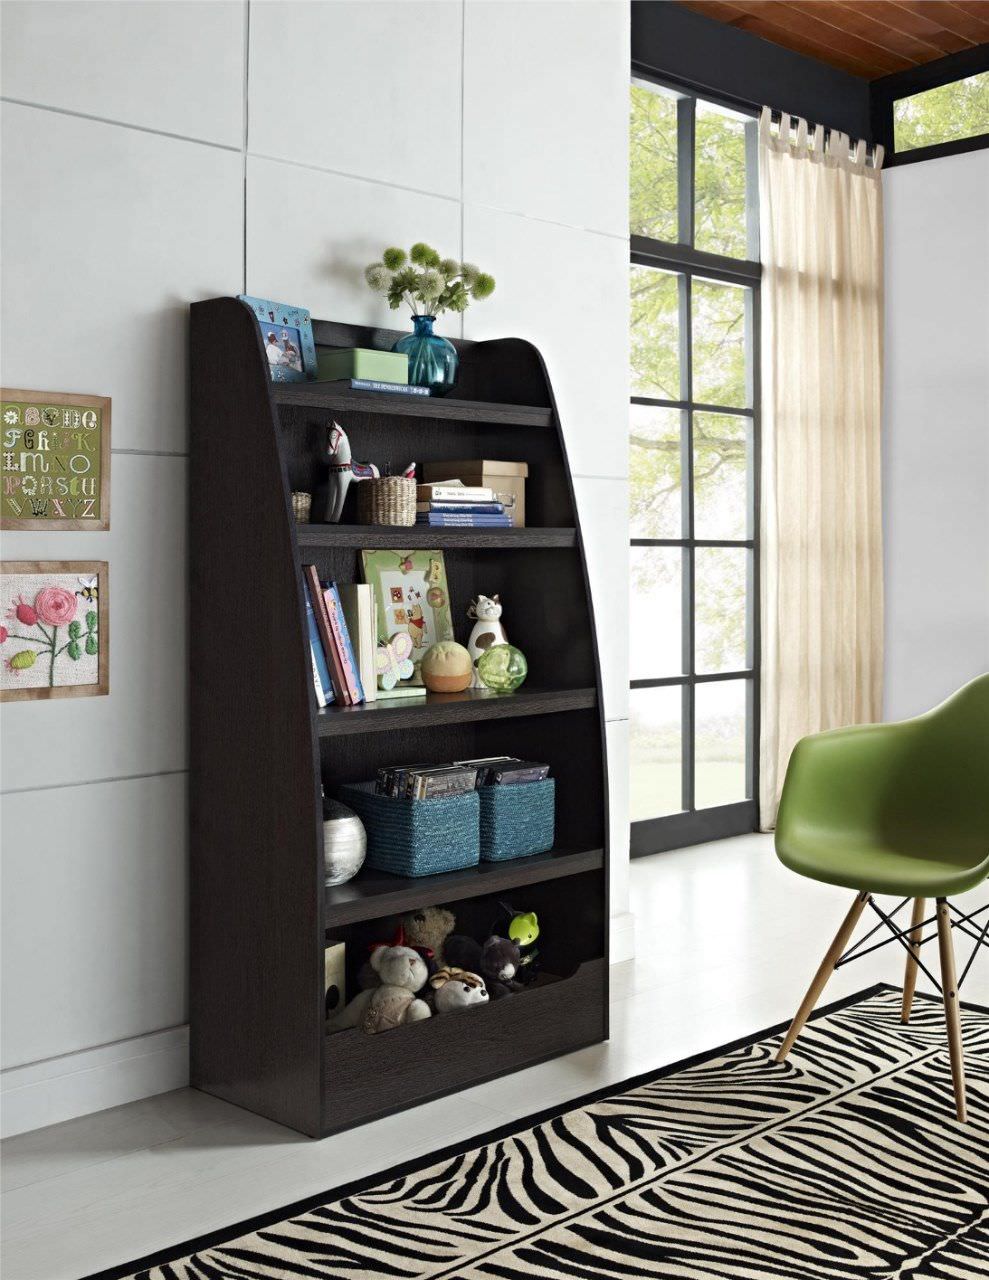 Giá sách hình thang được bo tròn sơn màu đen lịch sự có thể dùng bố trí ở phòng khách